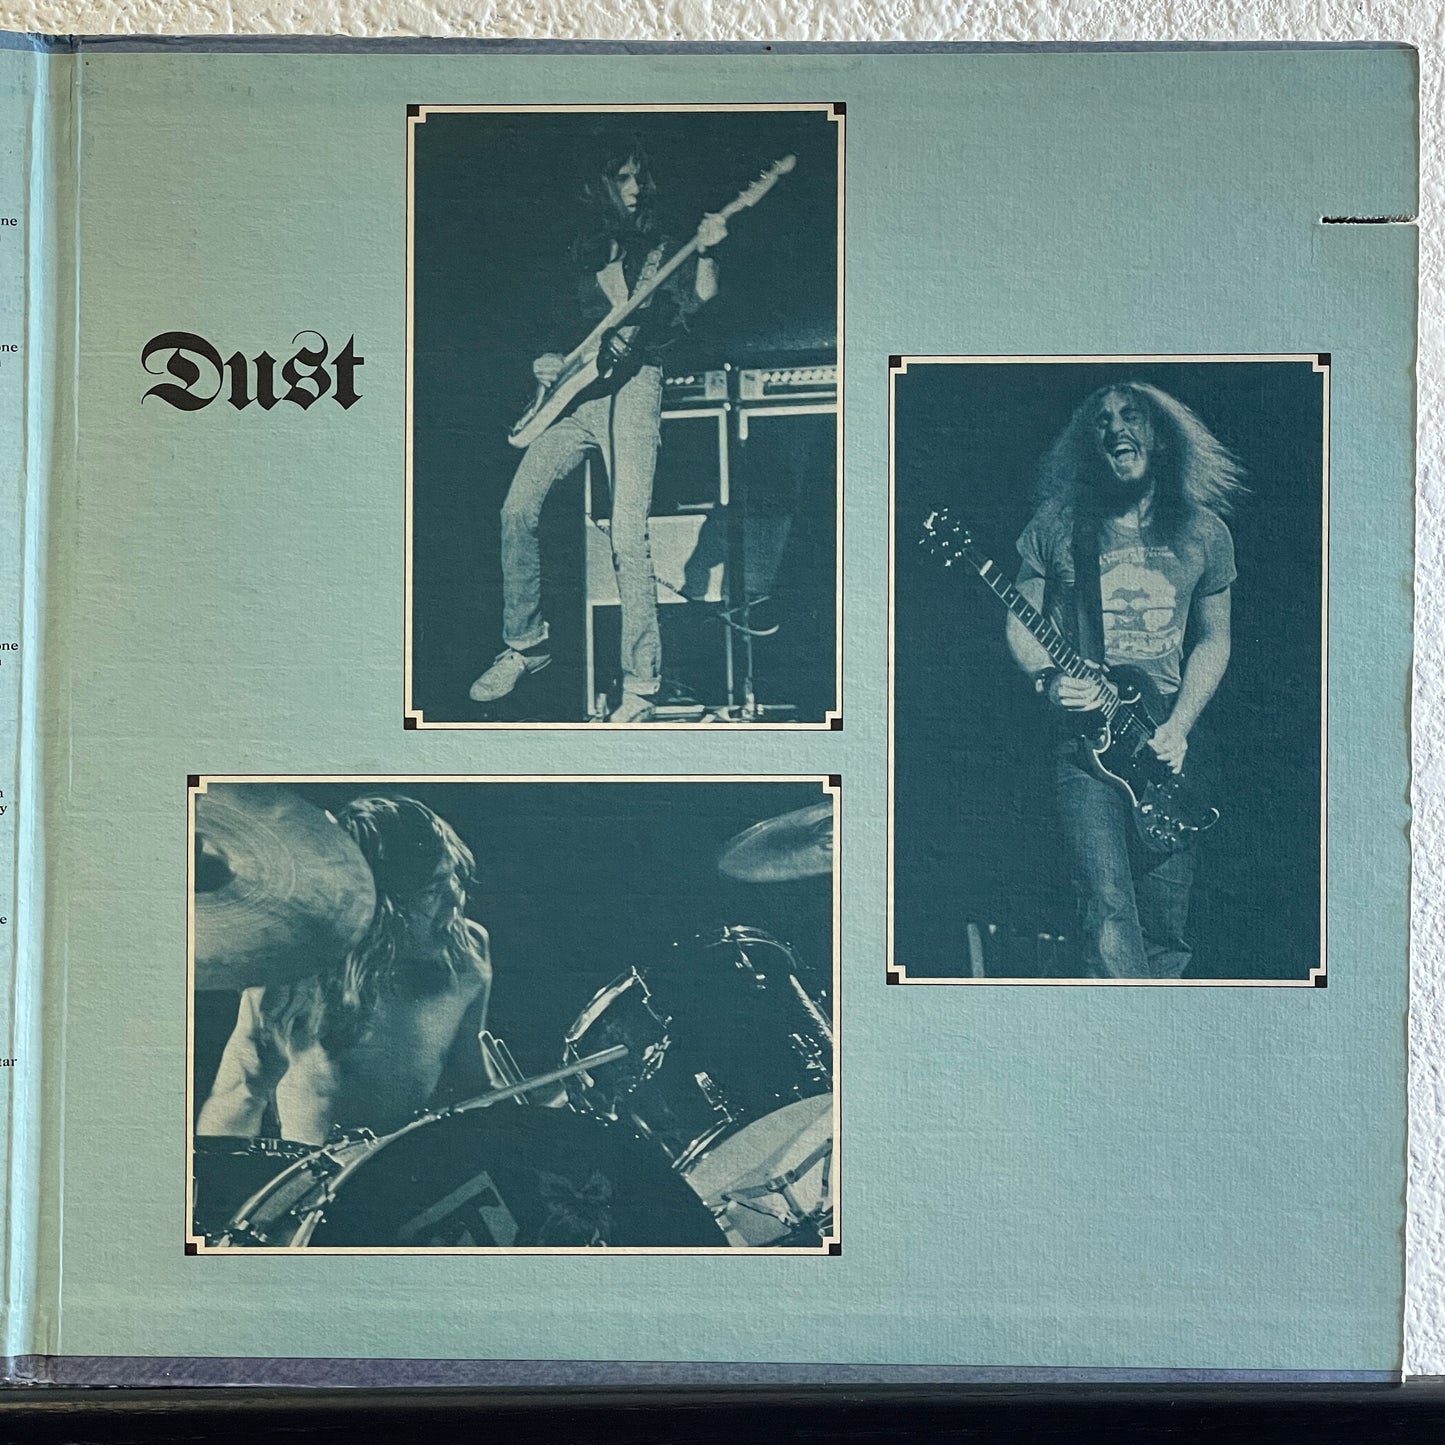 Dust - Hard Attack original LP